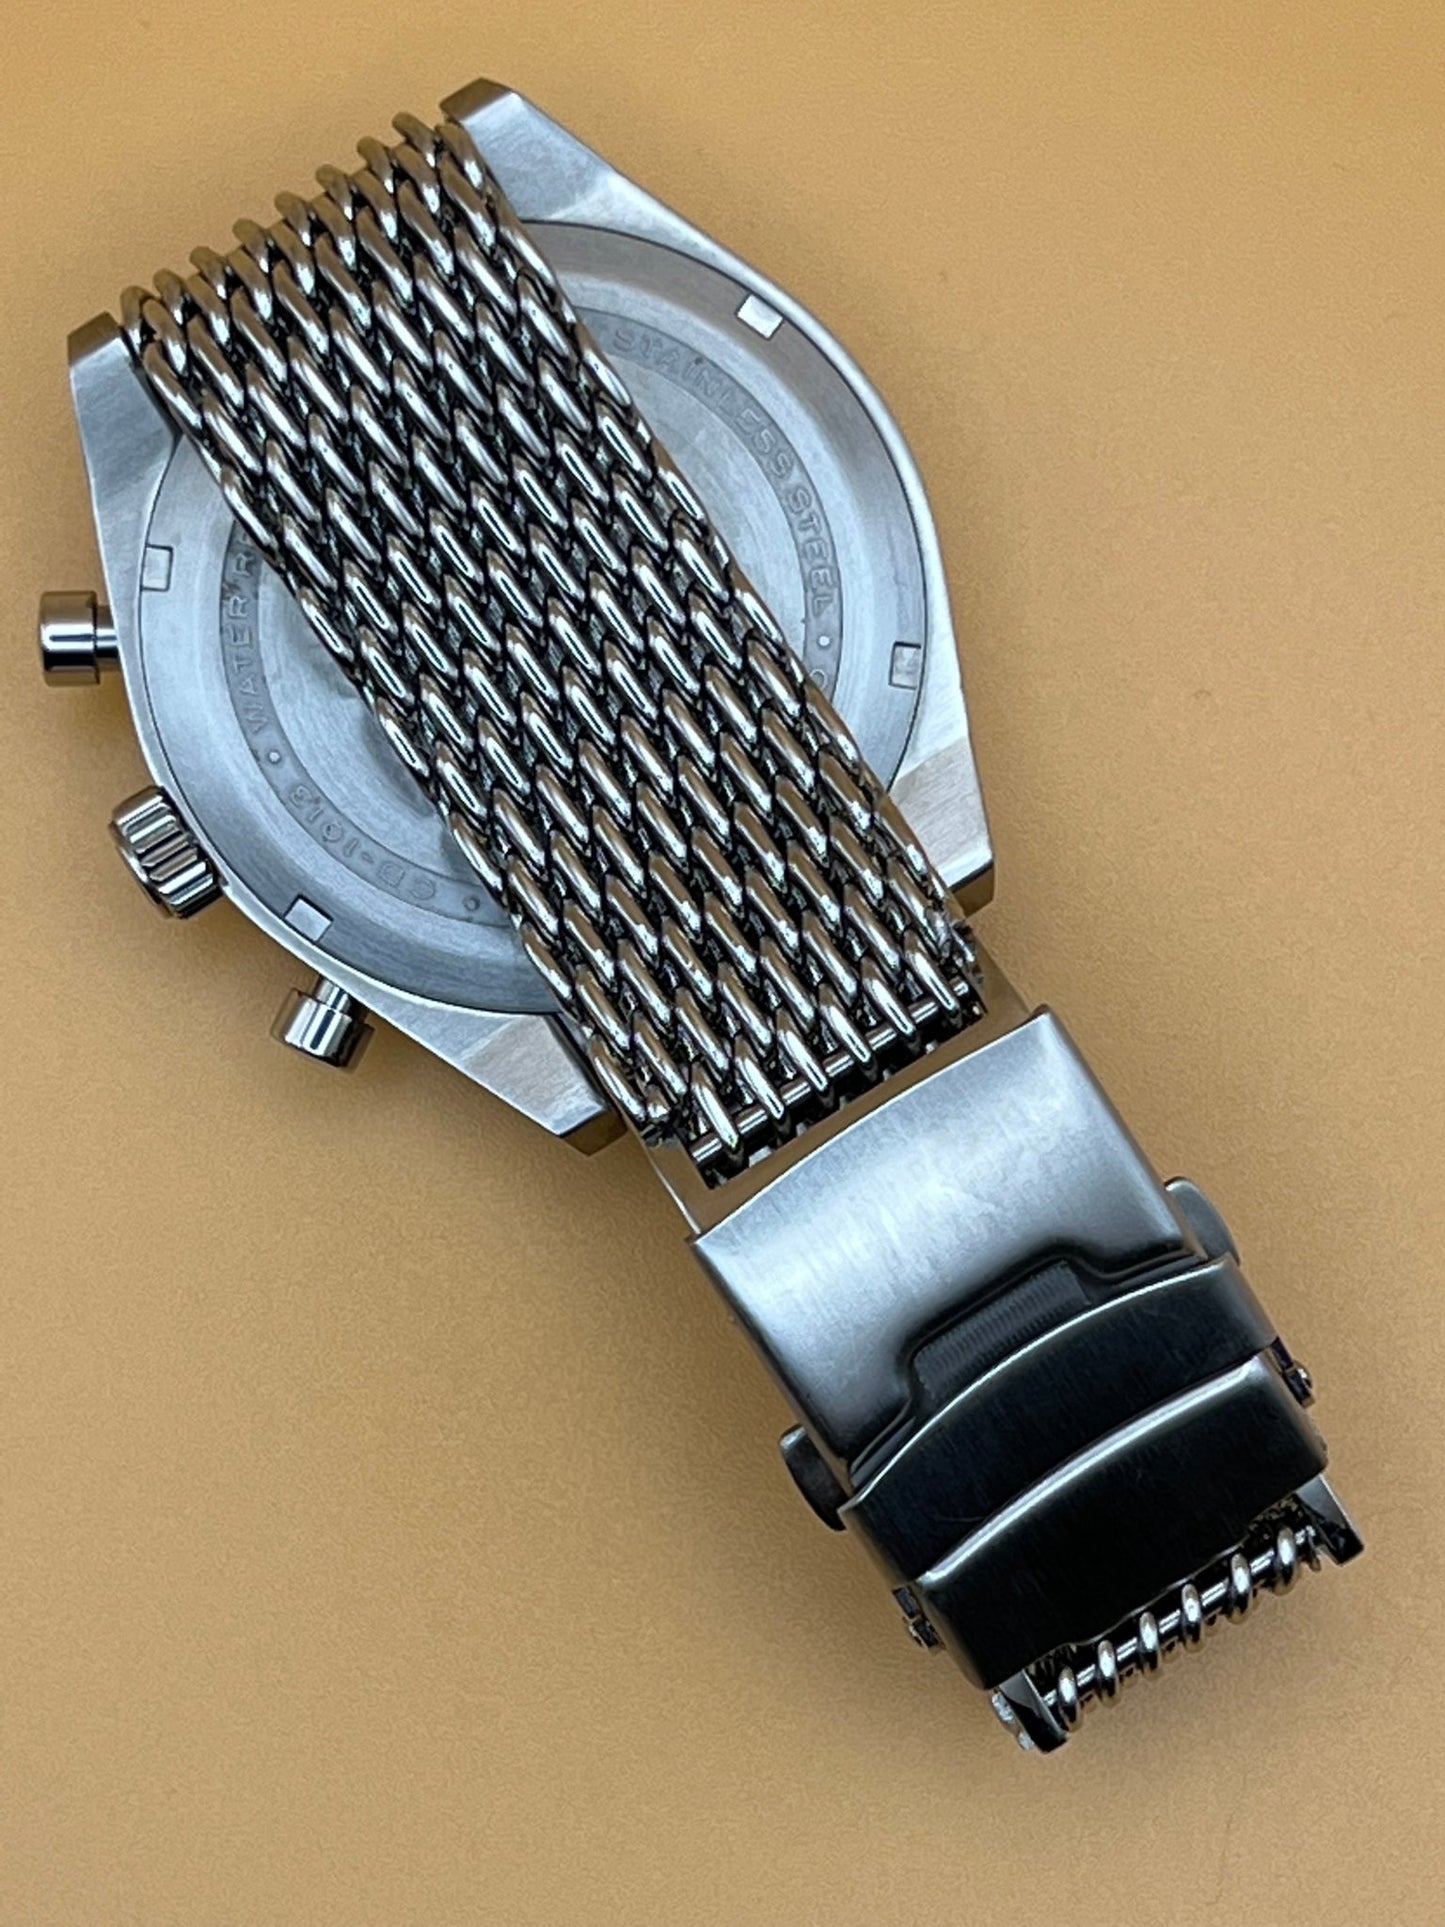 Cadola Hairpin CD 1013 - Maple City Timepieces